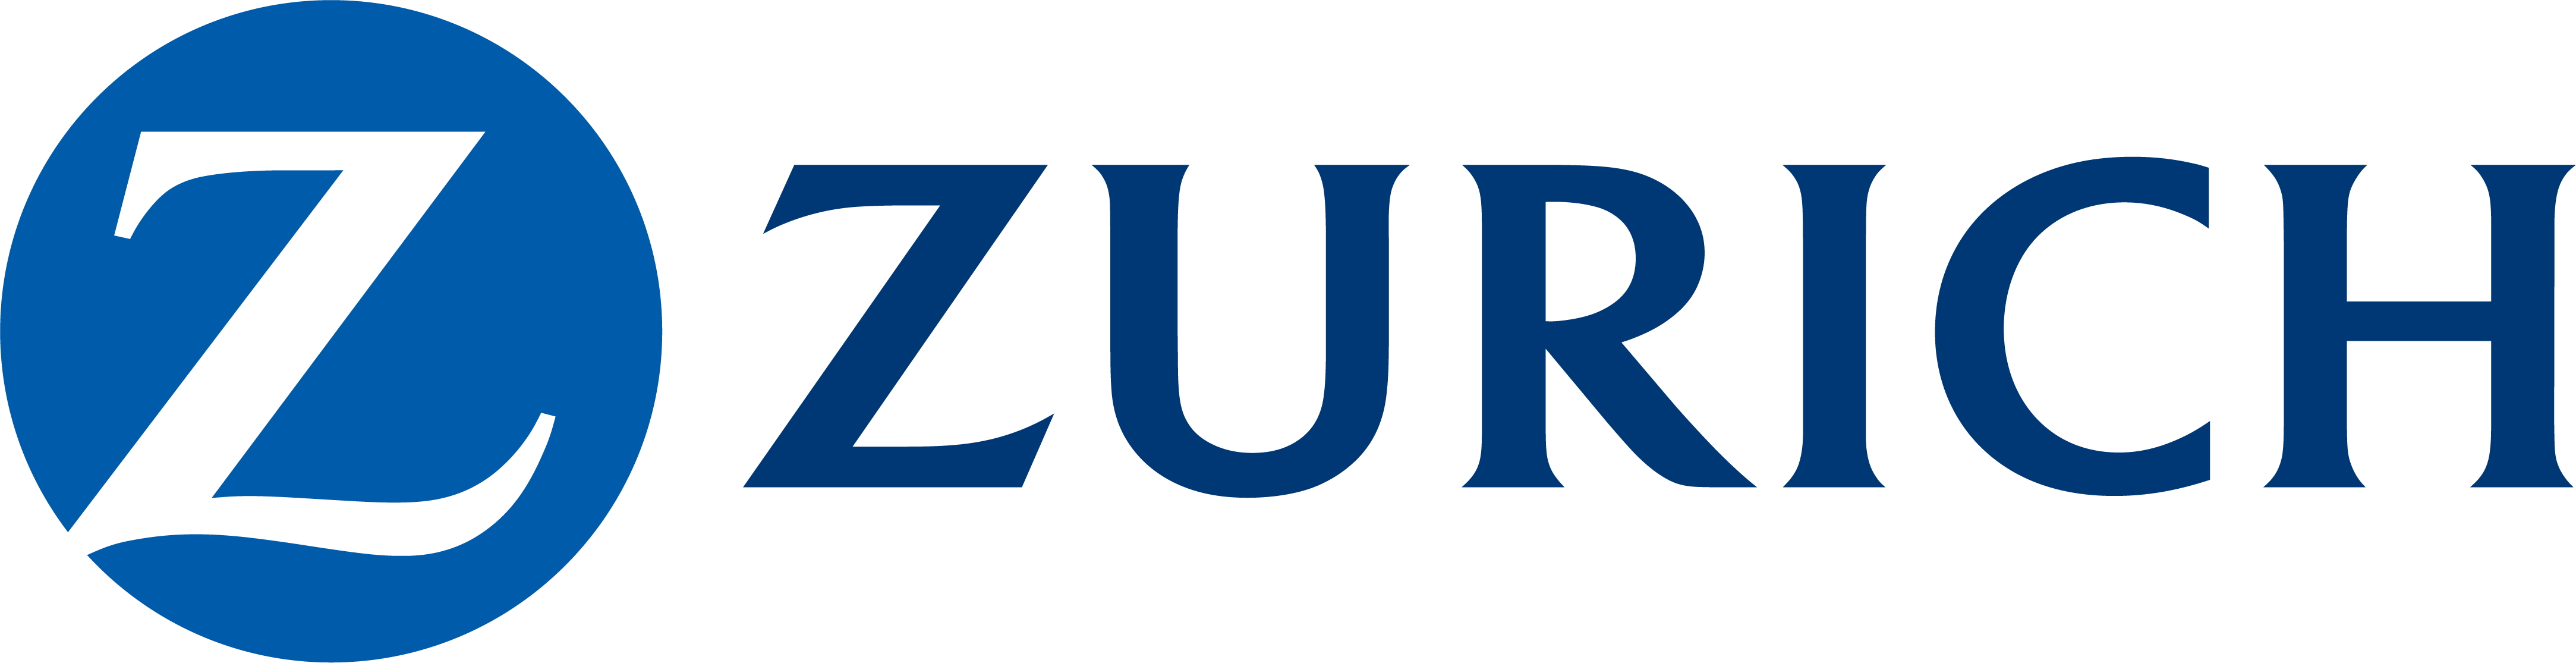 Zurich_logo